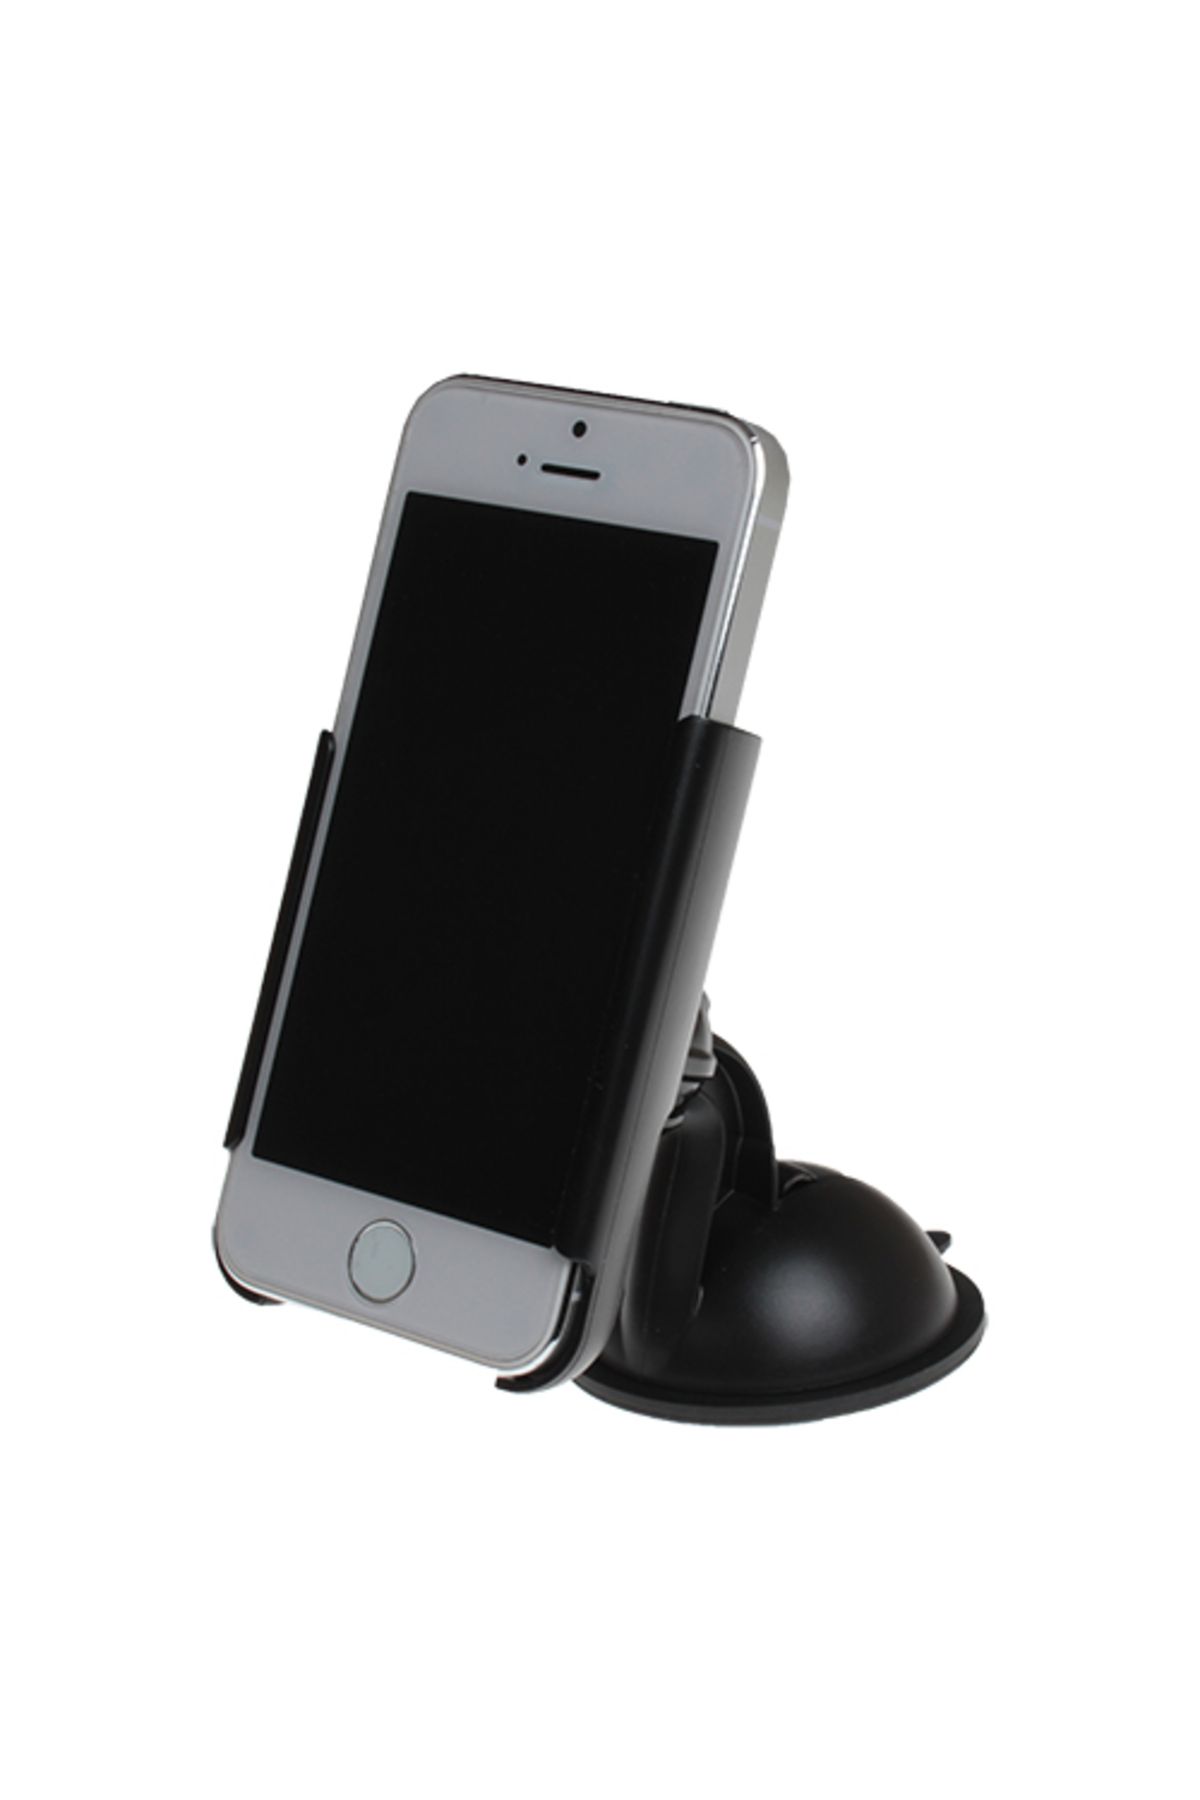 Cellular Line Iphone Se/5s/5c/5 Araç Telefon Tutacağı Siyah